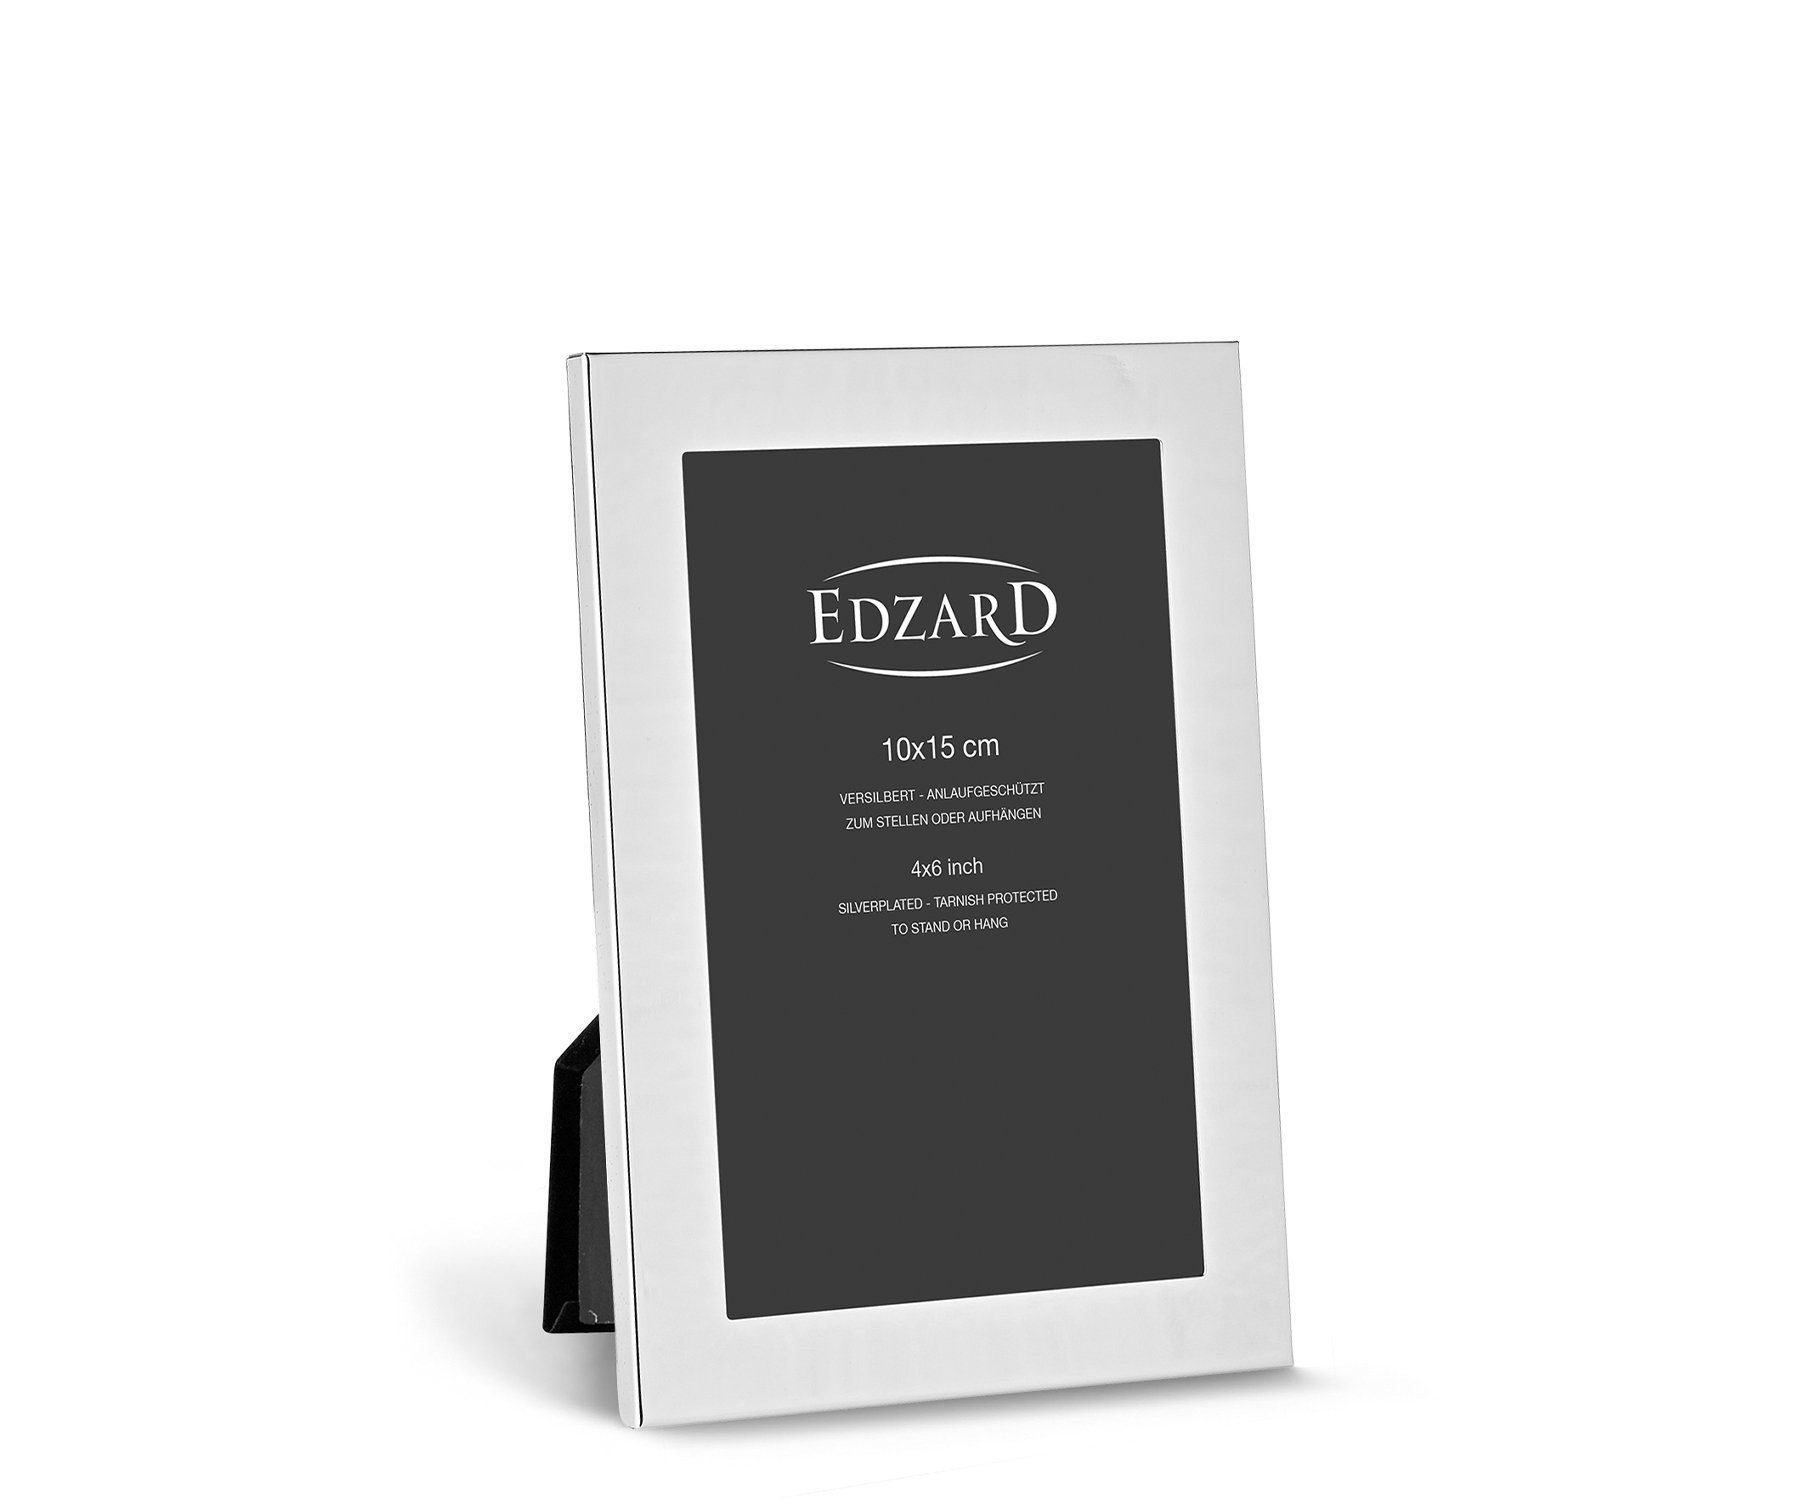 EDZARD Bilderrahmen Prato, versilbert und anlaufgeschützt, für 10x15 cm Foto